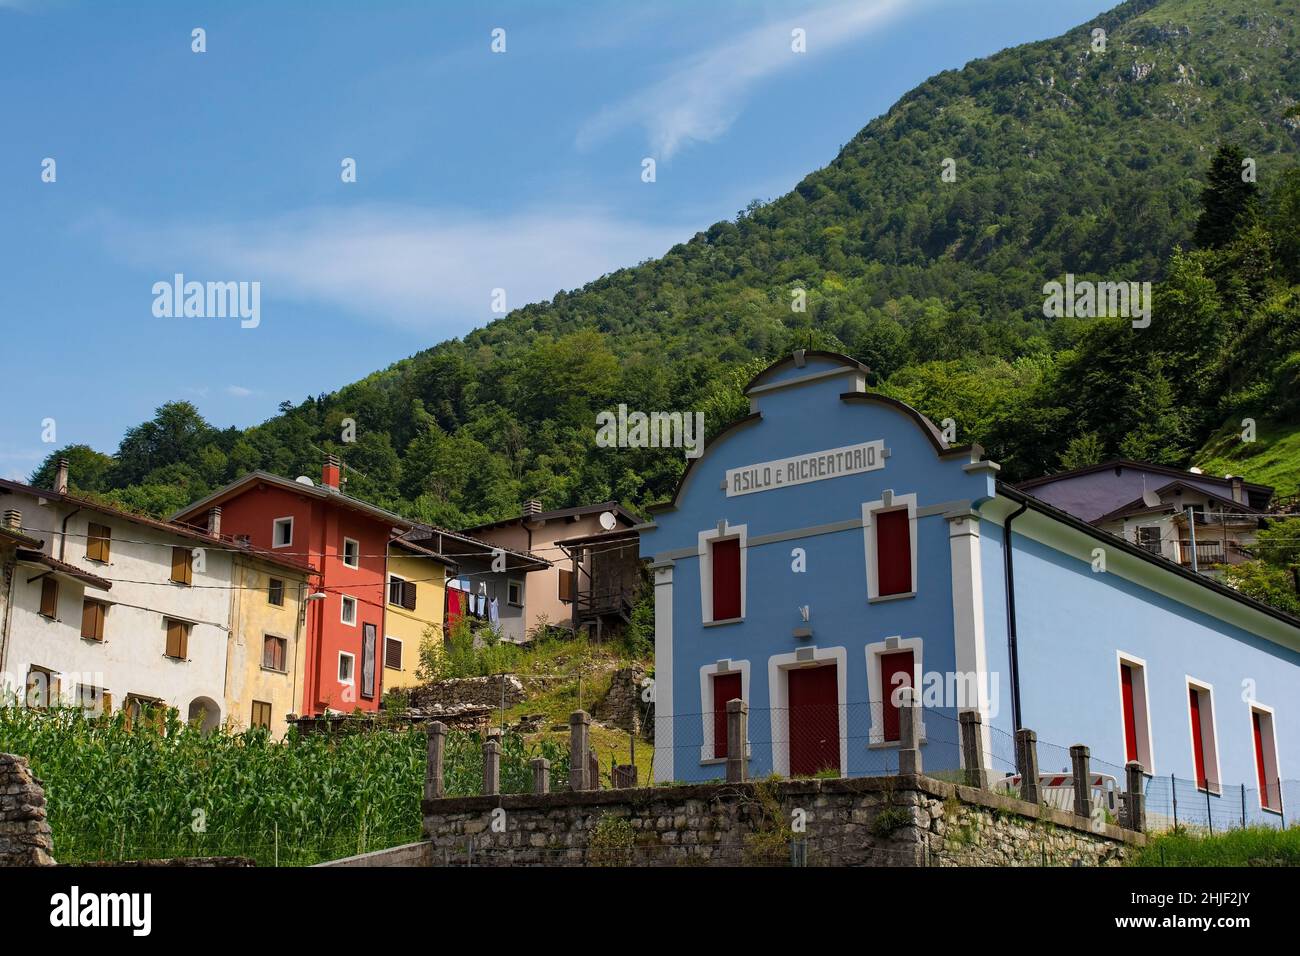 Le village de Dorpolla dans la municipalité de Moggio Udinese d'Udine, Italie.Le texte sur le bâtiment de premier plan indique qu'il s'agit d'une école maternelle Banque D'Images